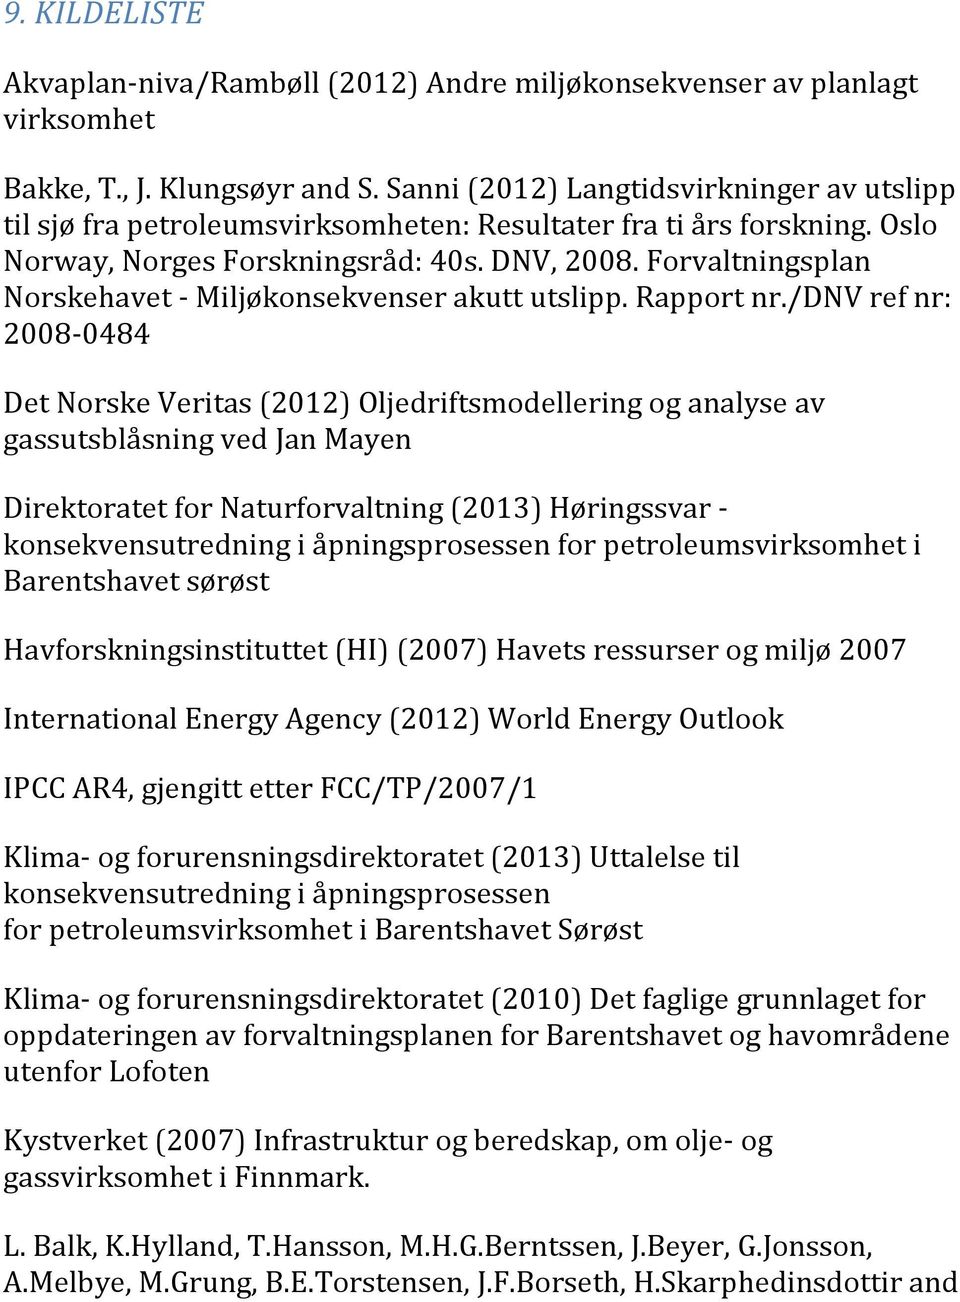 Forvaltningsplan Norskehavet_Miljøkonsekvenserakuttutslipp.Rapportnr.